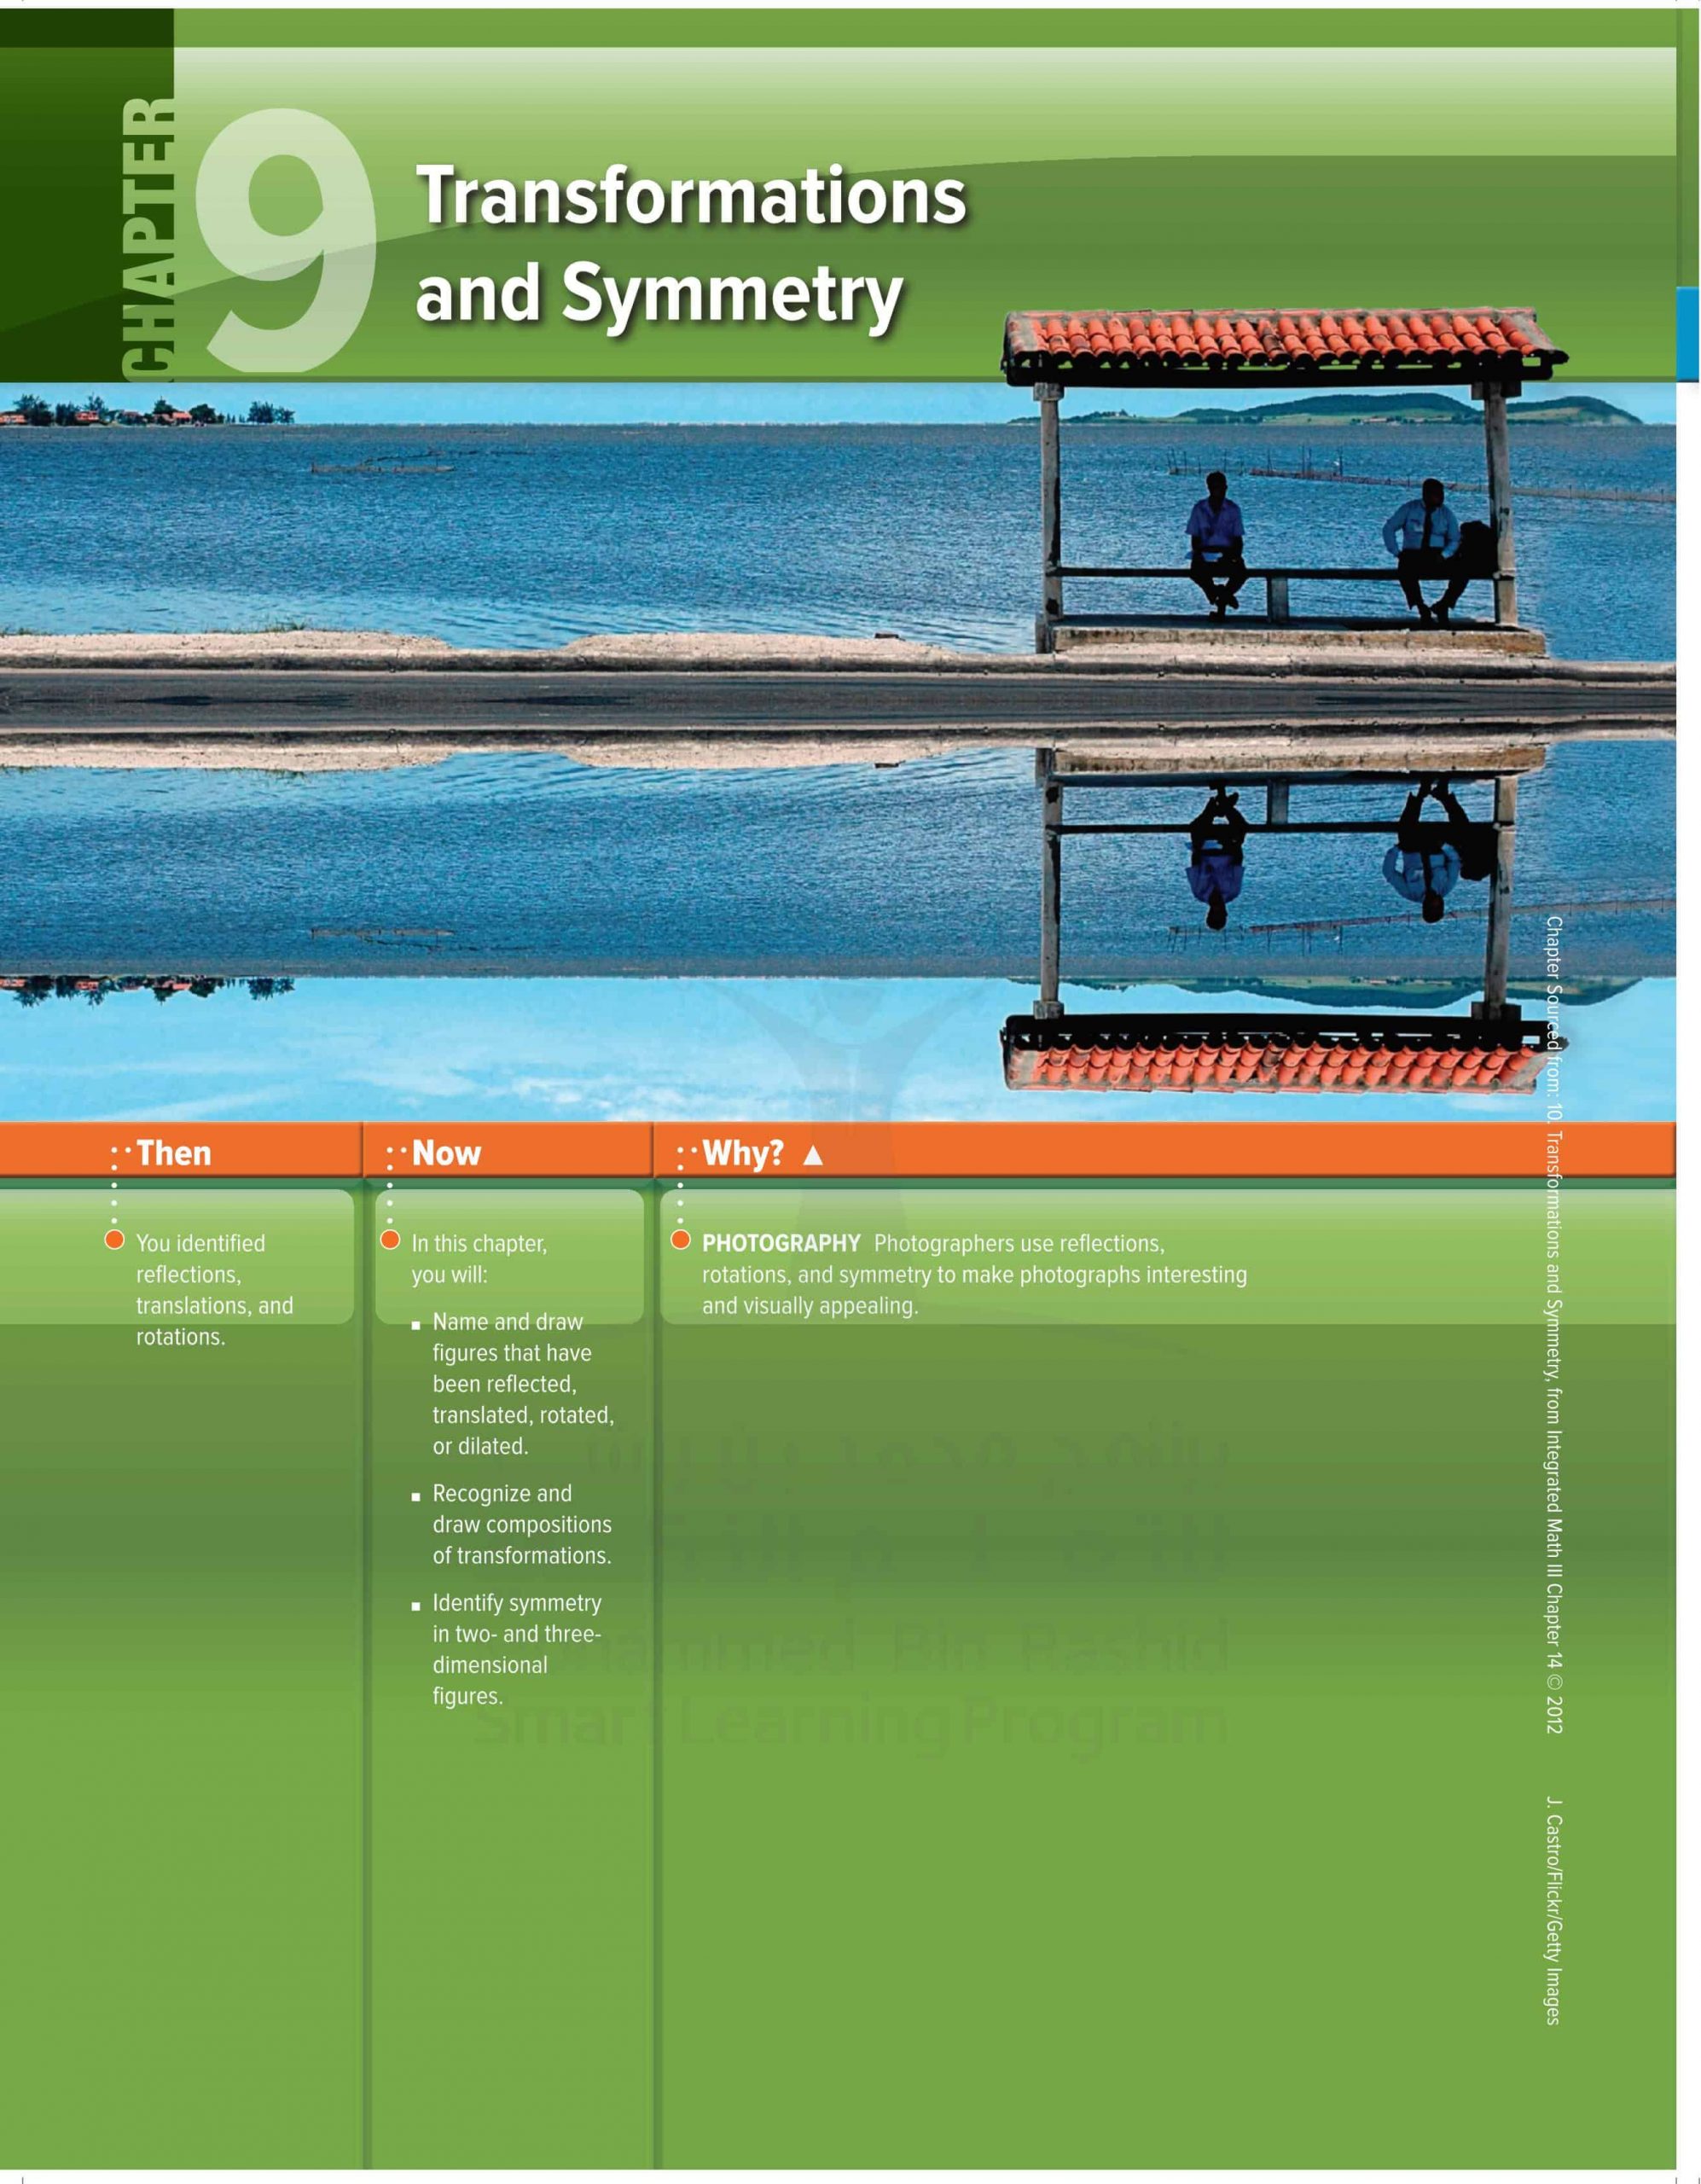 كتاب الطالب وحدة Transformations and Symmetry الفصل الدراسي الثالث 2020-2021 الصف الحادي عشر مادة الرياضيات المتكاملة